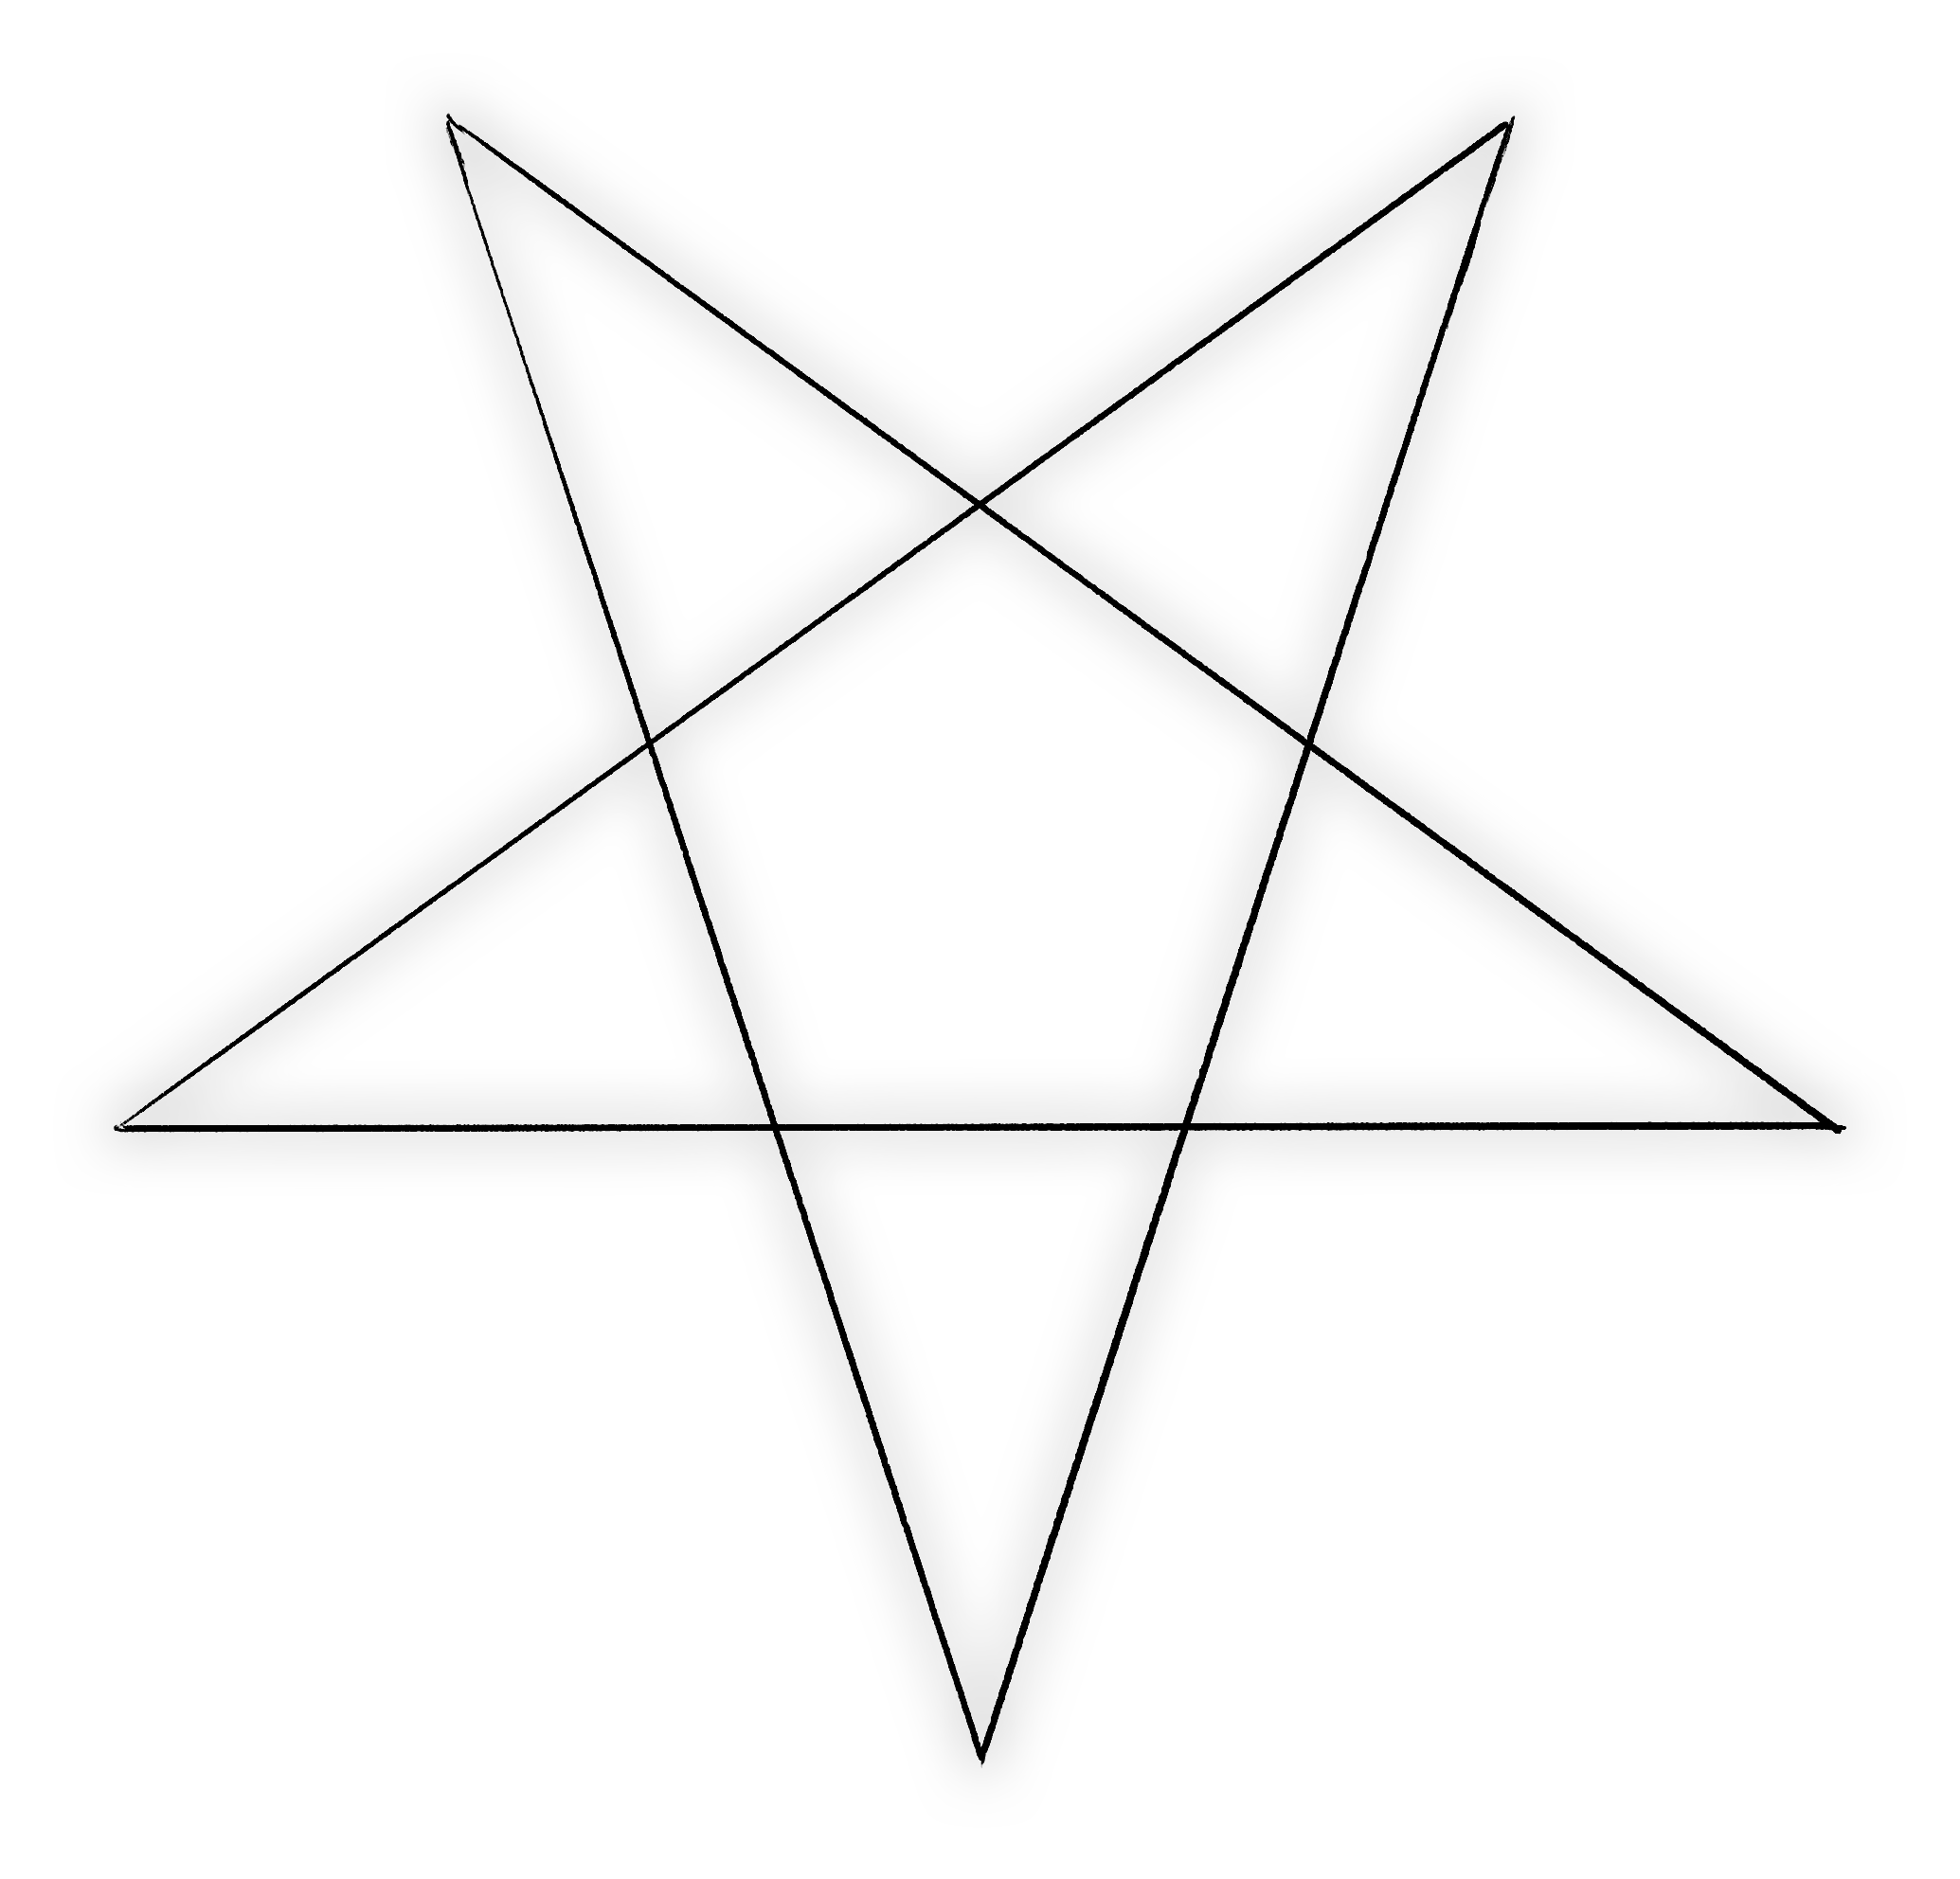 Navigation Pentagram